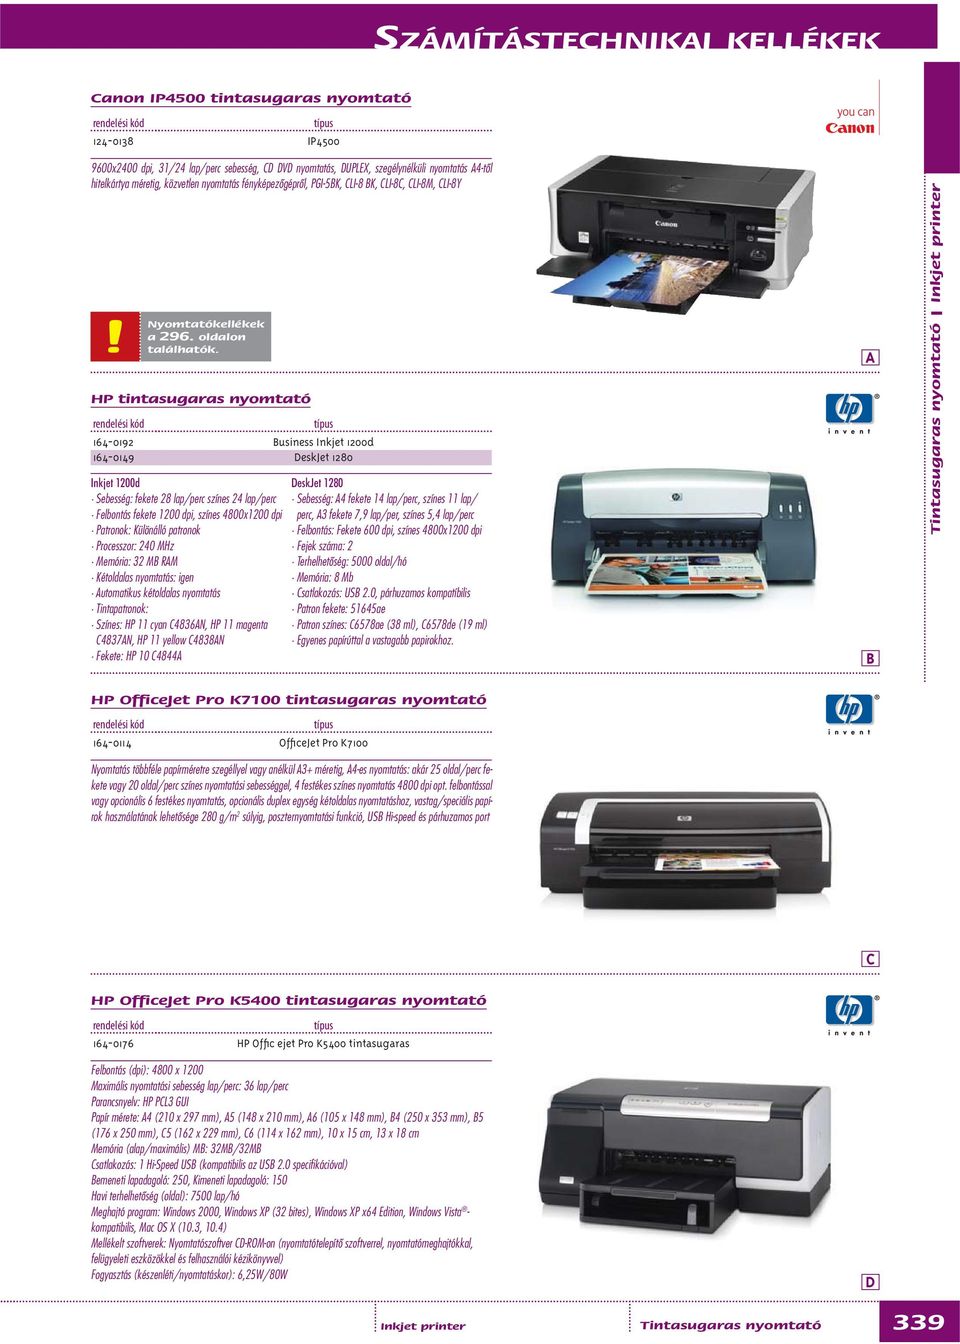 HP tintasugaras nyomtató Inkjet 1200d Sebesség: fekete 28 lap/perc színes 24 lap/perc Felbontás fekete 1200 dpi, színes 4800x1200 dpi Patronok: Különálló patronok Processzor: 240 MHz Memória: 32 M RM